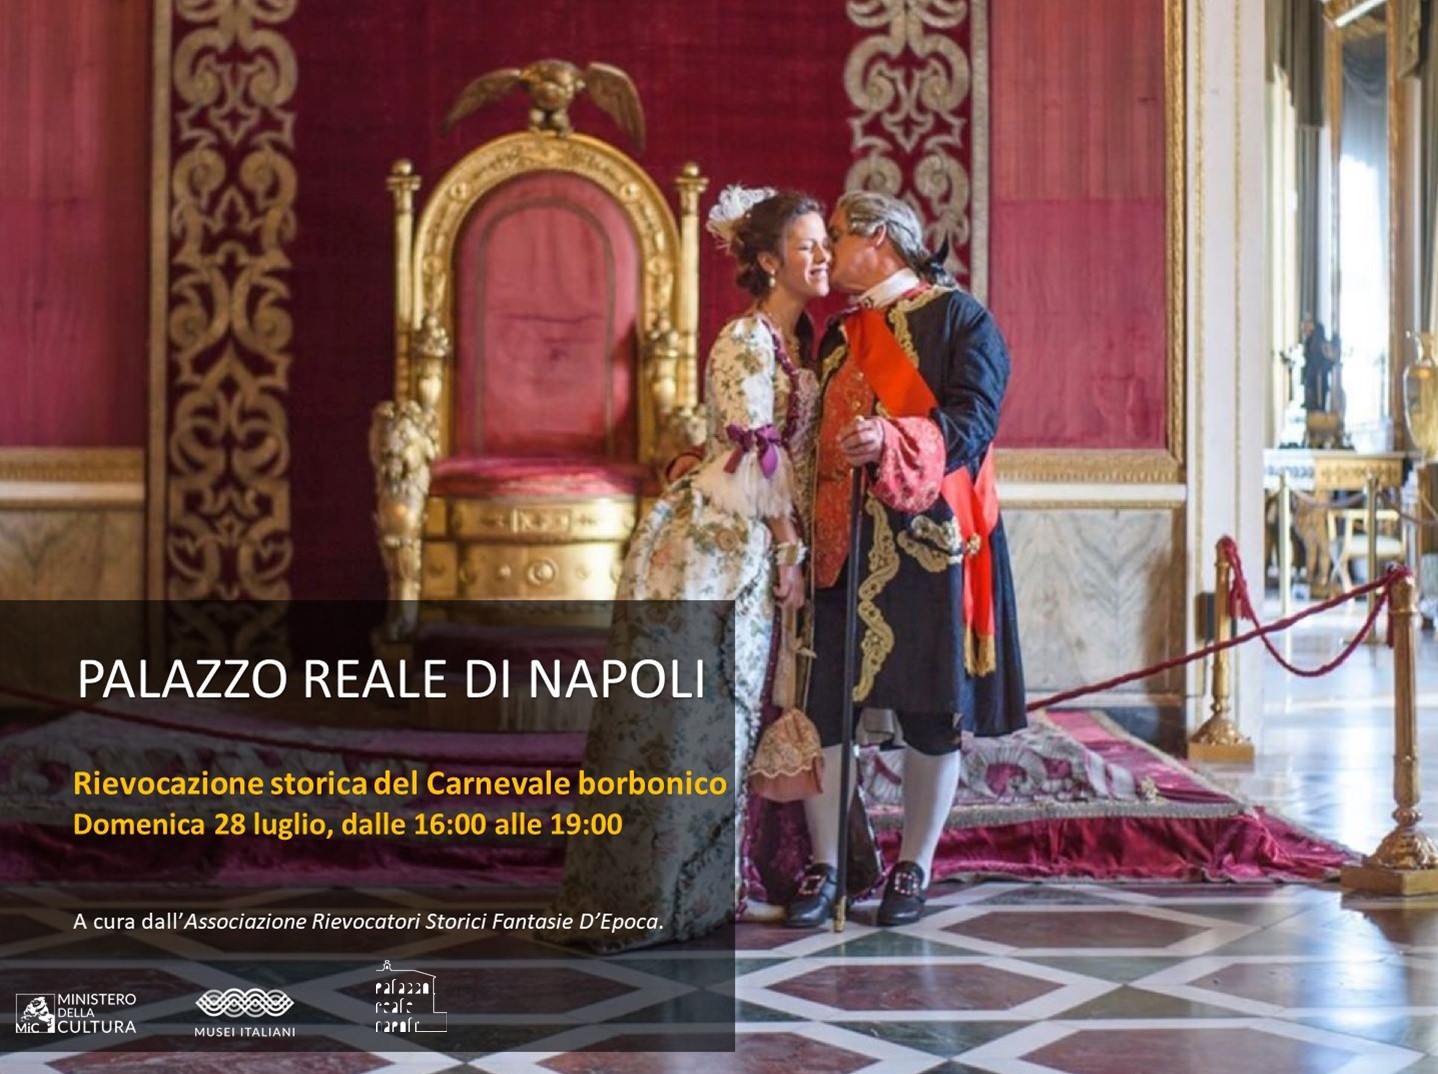 Palazzo Reale di Napoli – Rievocazione storica del Carnevale borbonico